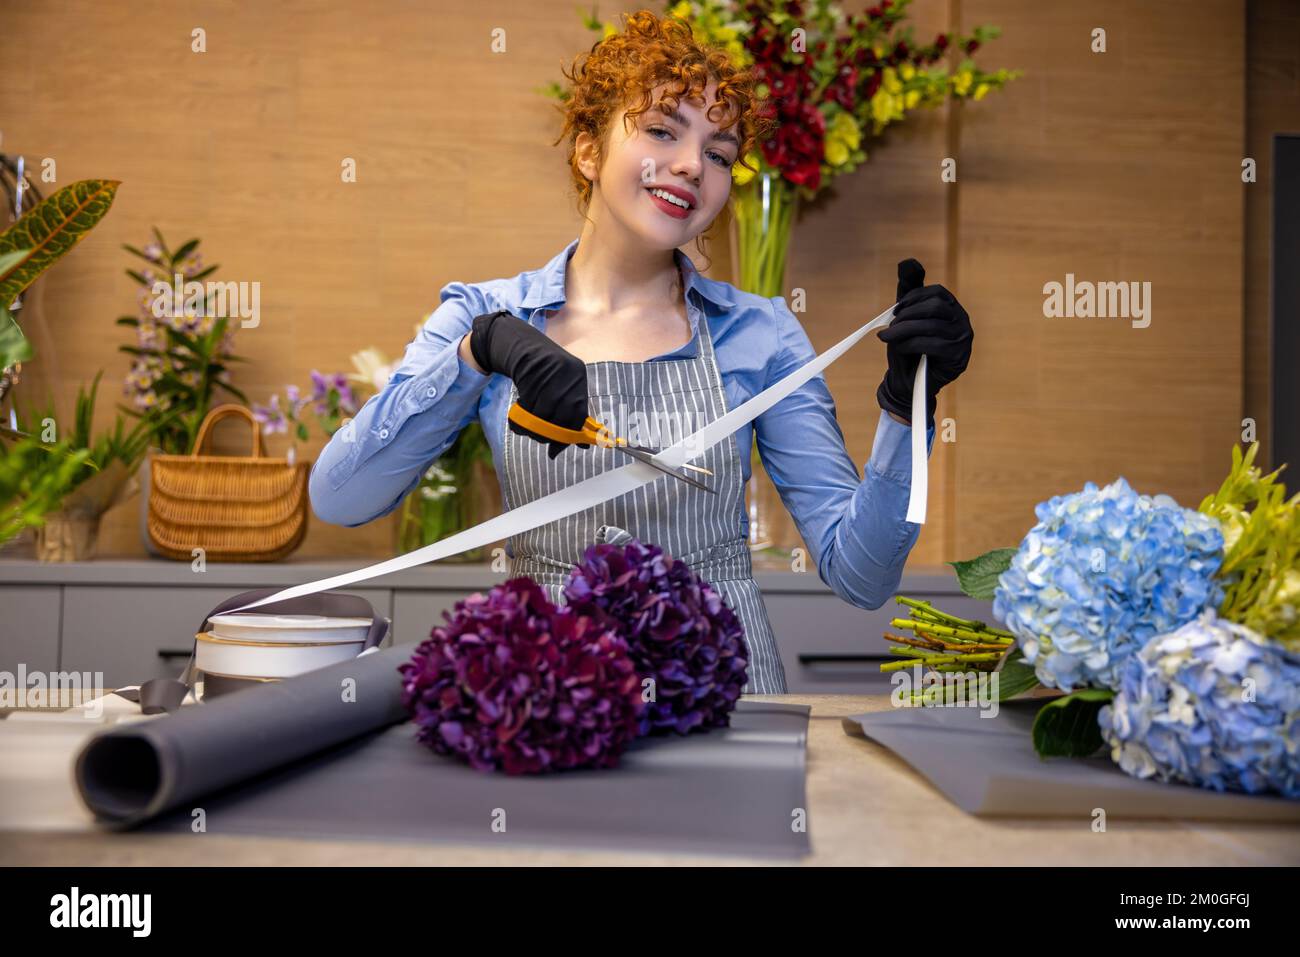 Florista de jengibre lindo buscando involucrados mientras se hace una cubierta para el bouquet Foto de stock